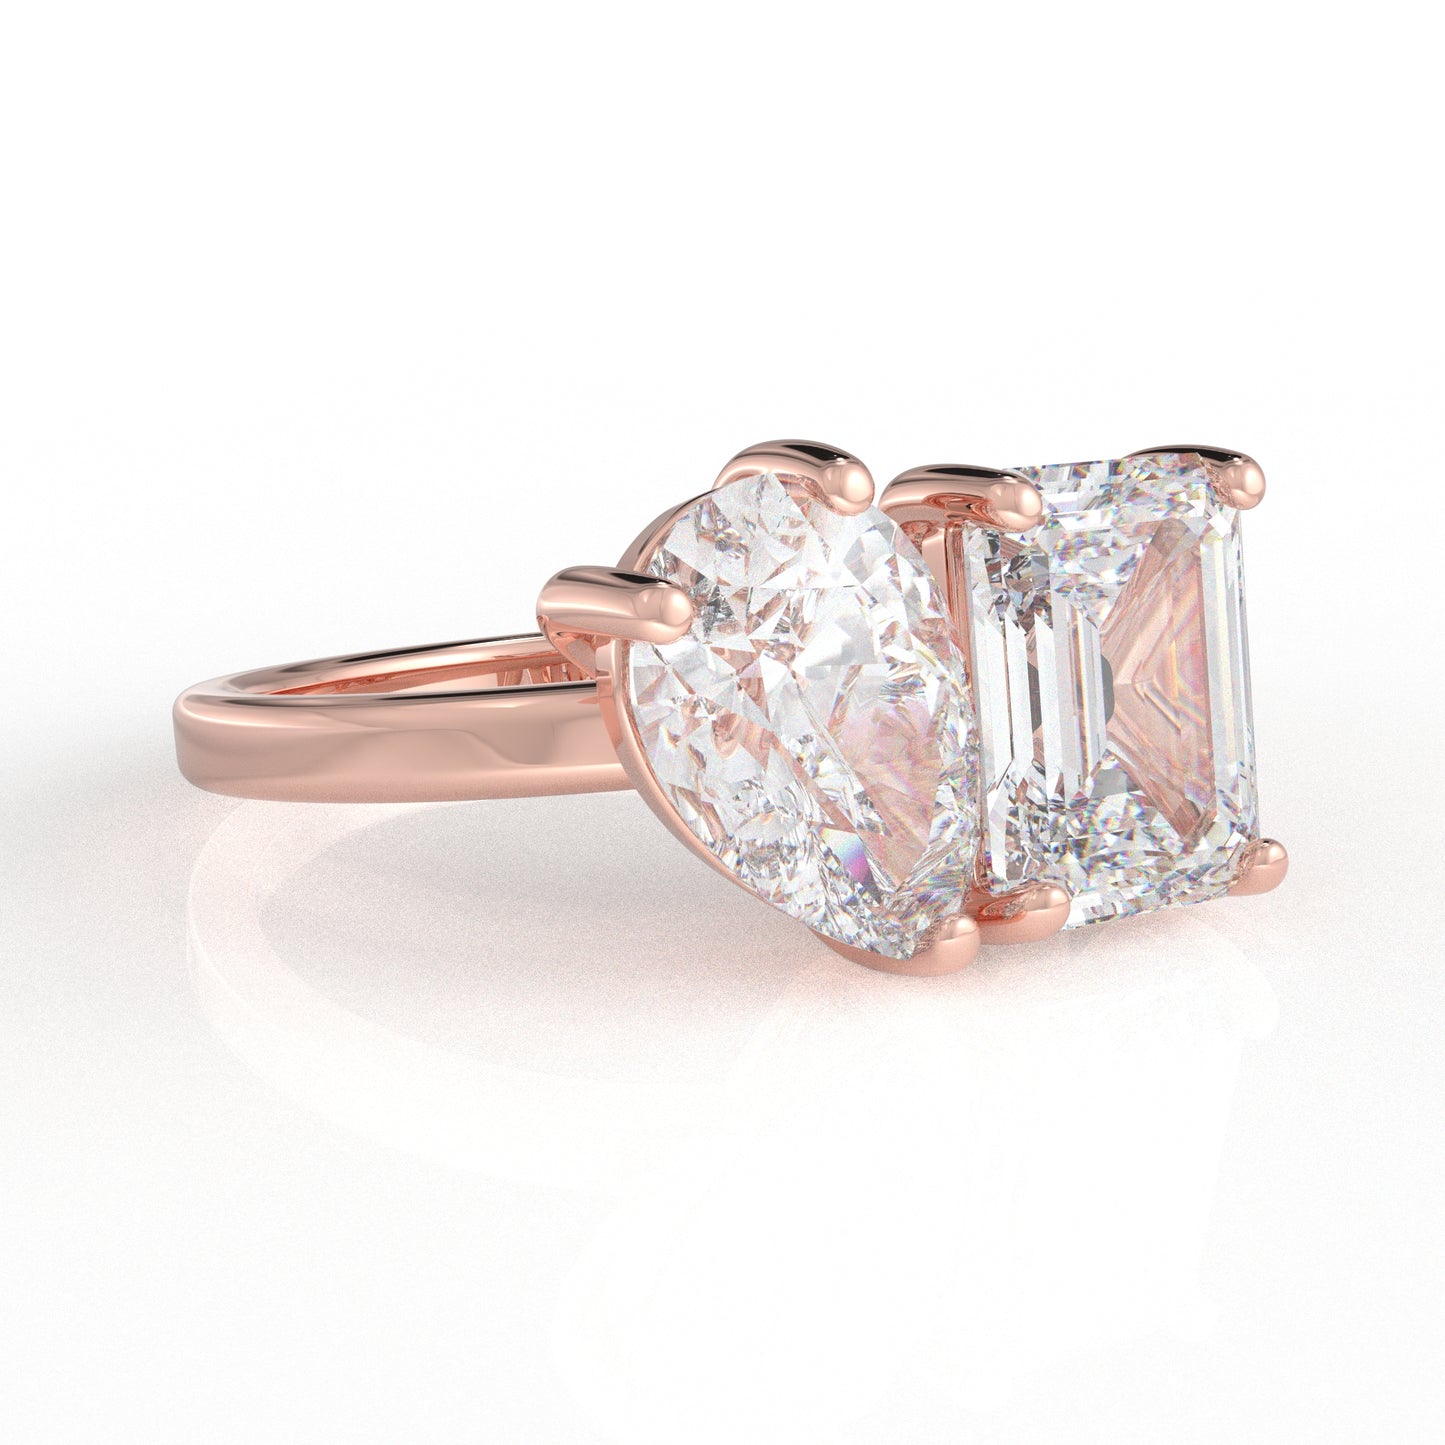 Athena Ring - 2.75 Ct moissanite diamond